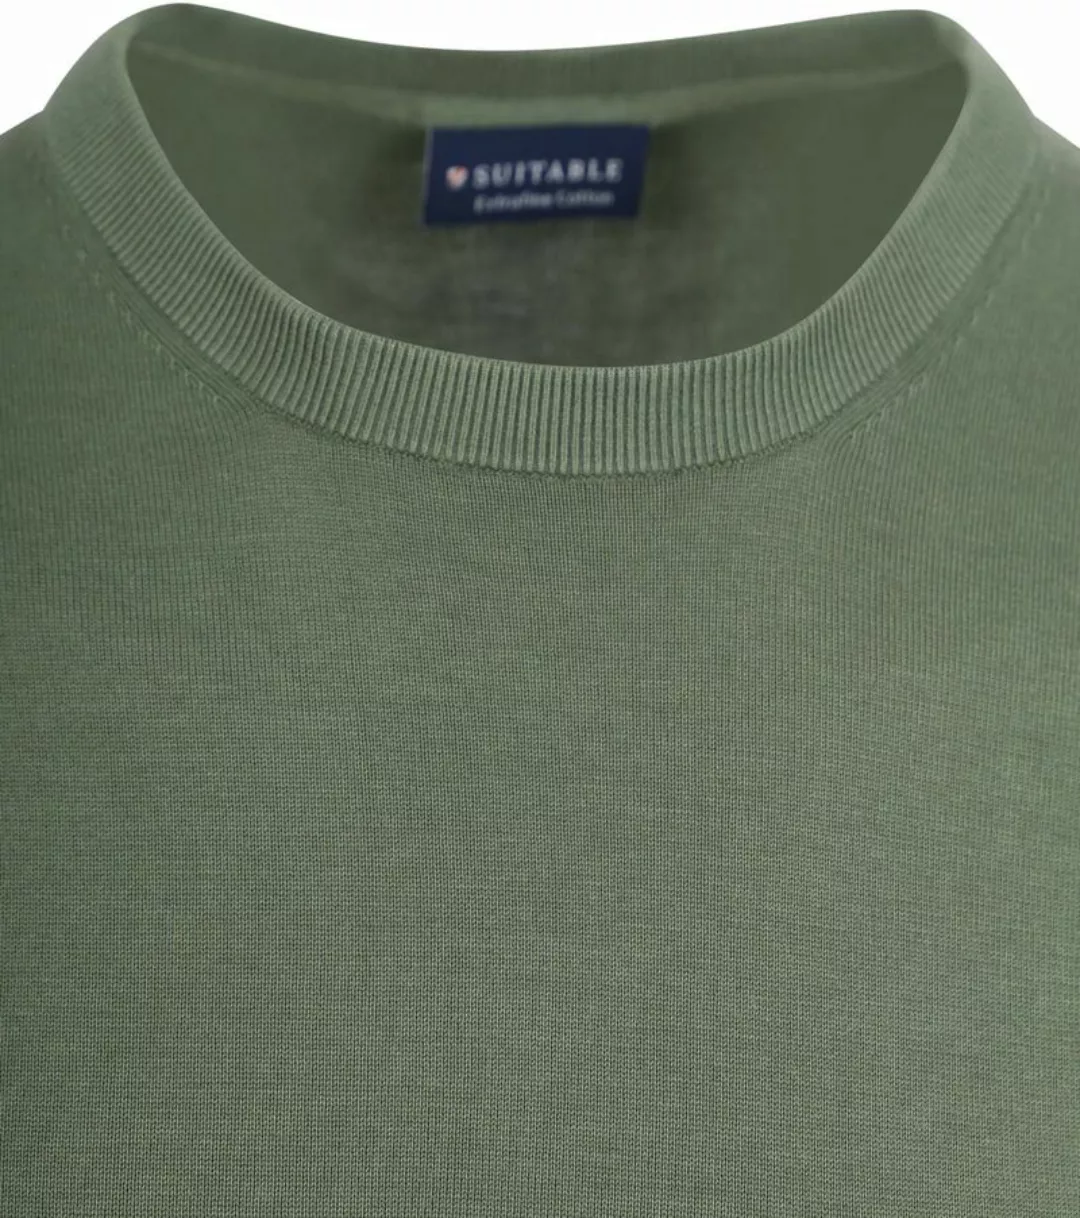 Suitable Knitted T-shirt Grün - Größe L günstig online kaufen